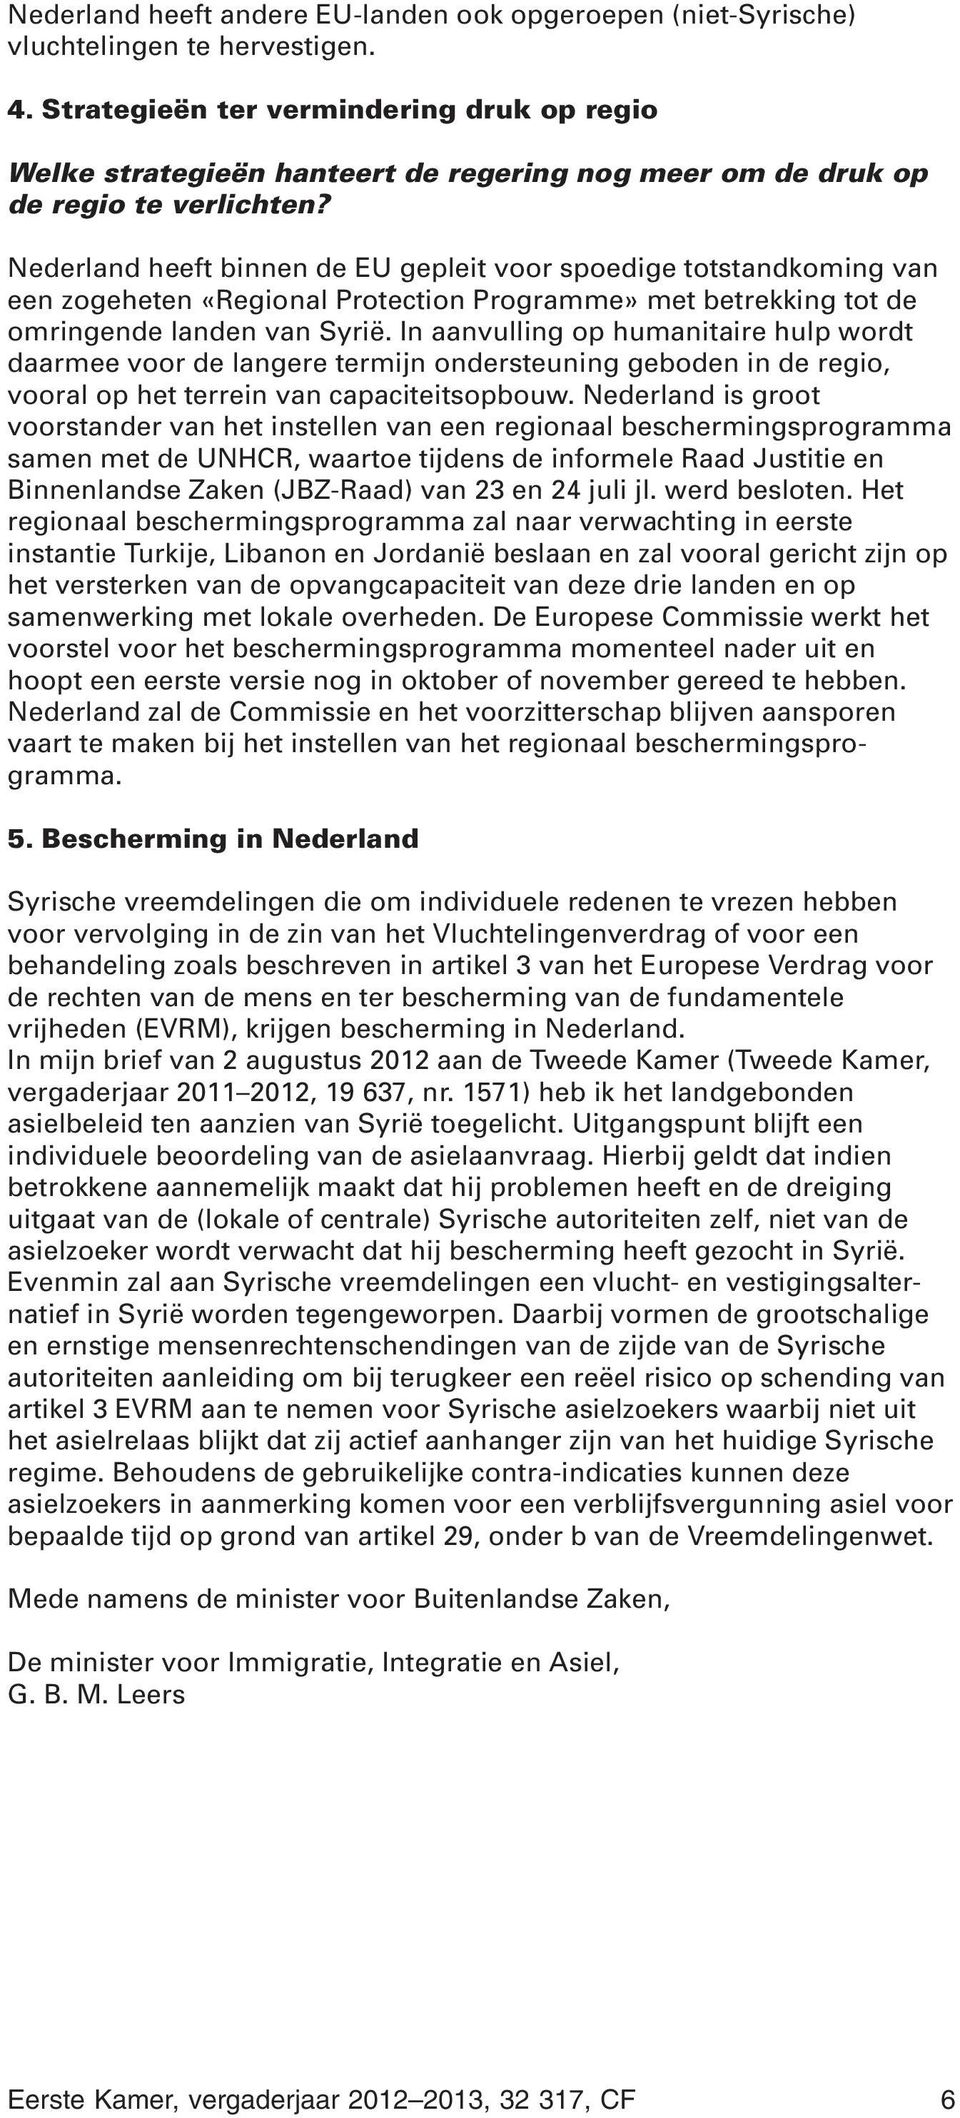 Nederland heeft binnen de EU gepleit voor spoedige totstandkoming van een zogeheten «Regional Protection Programme» met betrekking tot de omringende landen van Syrië.